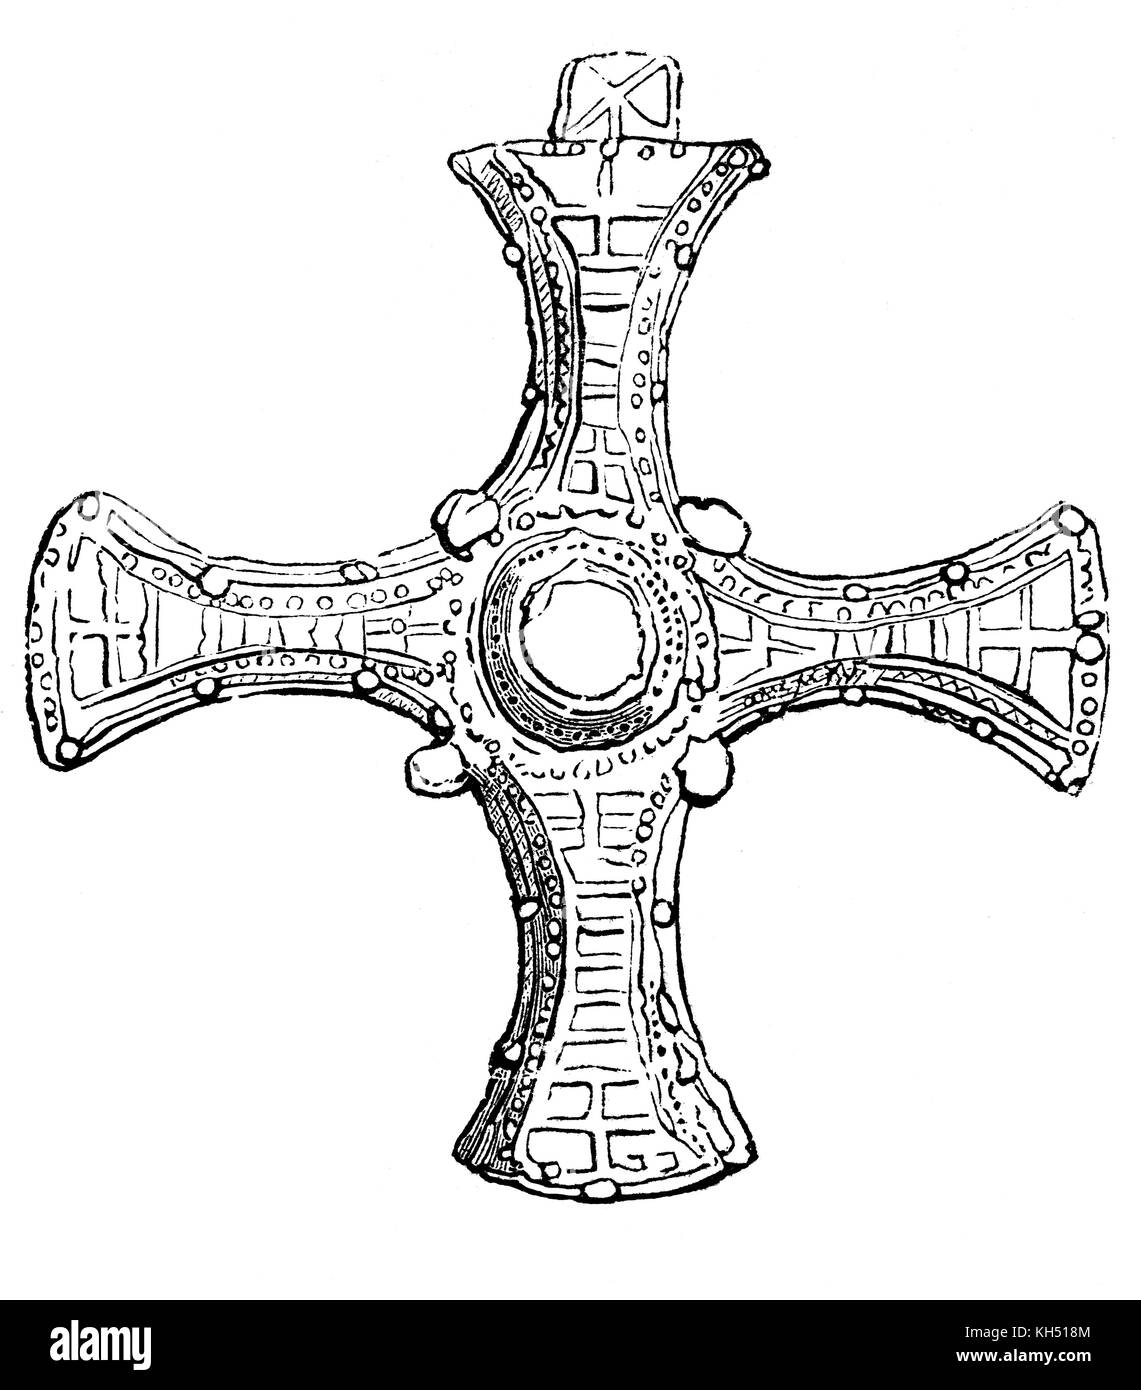 La Cruz de Oro de St Cuthbert (c. 634 - 687), monje, obispo y ermitaño de la iglesia primitiva en la tradición celta encontrados en su tumba, en la catedral de Durham en 1827, Inglaterra Foto de stock